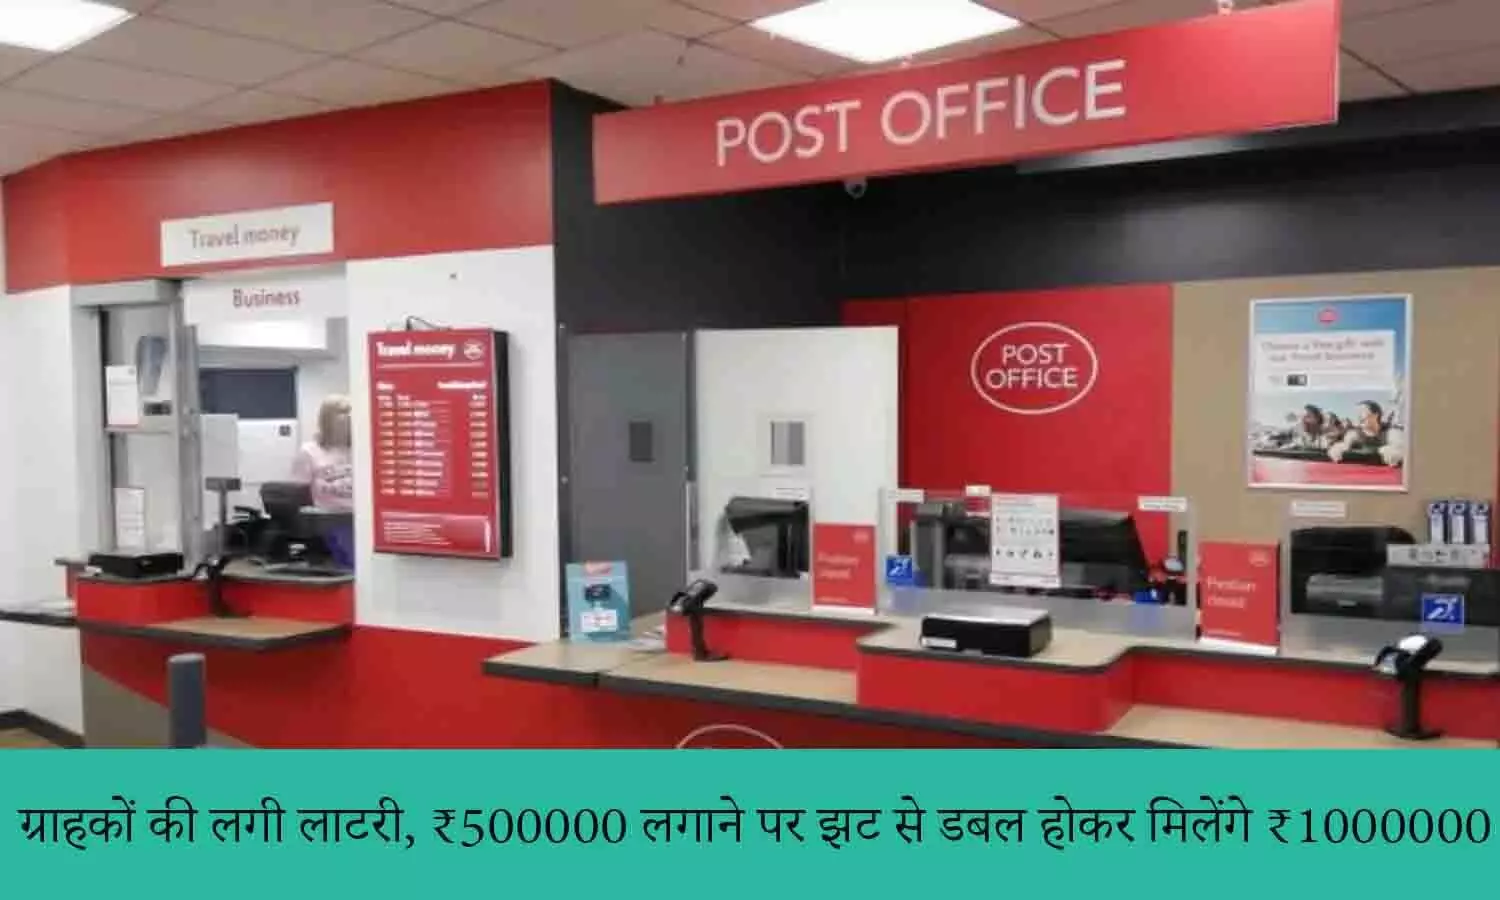 Post Office Scheme Latest Update 2022: खुशखबरी! ग्राहकों की लगी लाटरी, ₹500000 लगाने पर झट से डबल होकर मिलेंगे ₹1000000